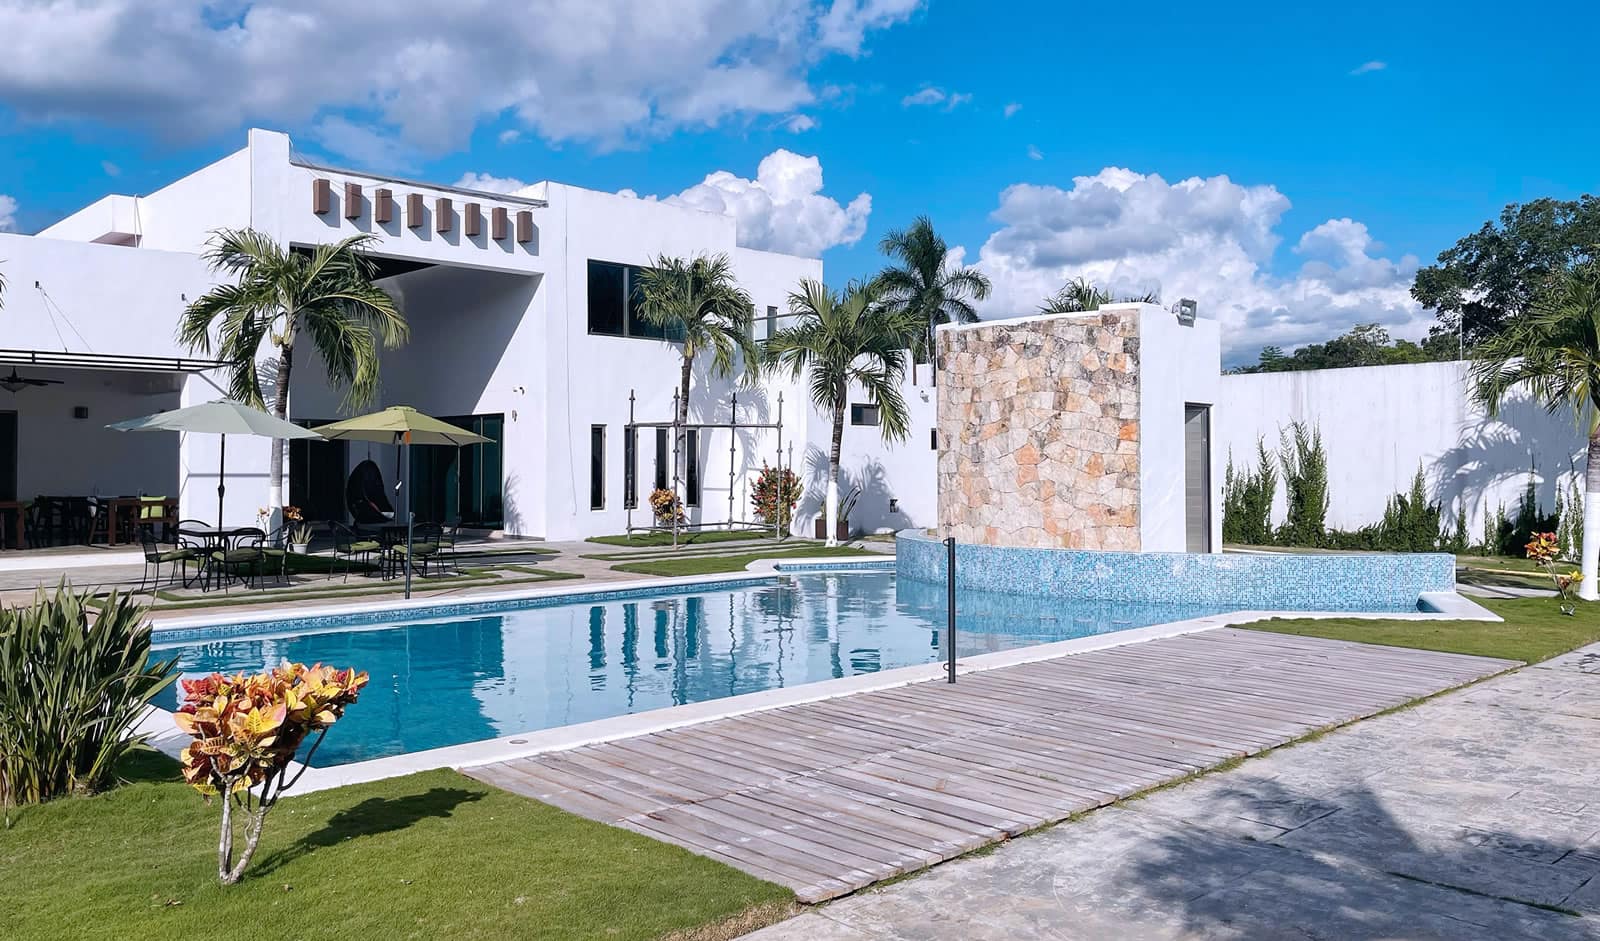 7 Bedroom House for Sale, Valladolid, Yucatan, Mexico